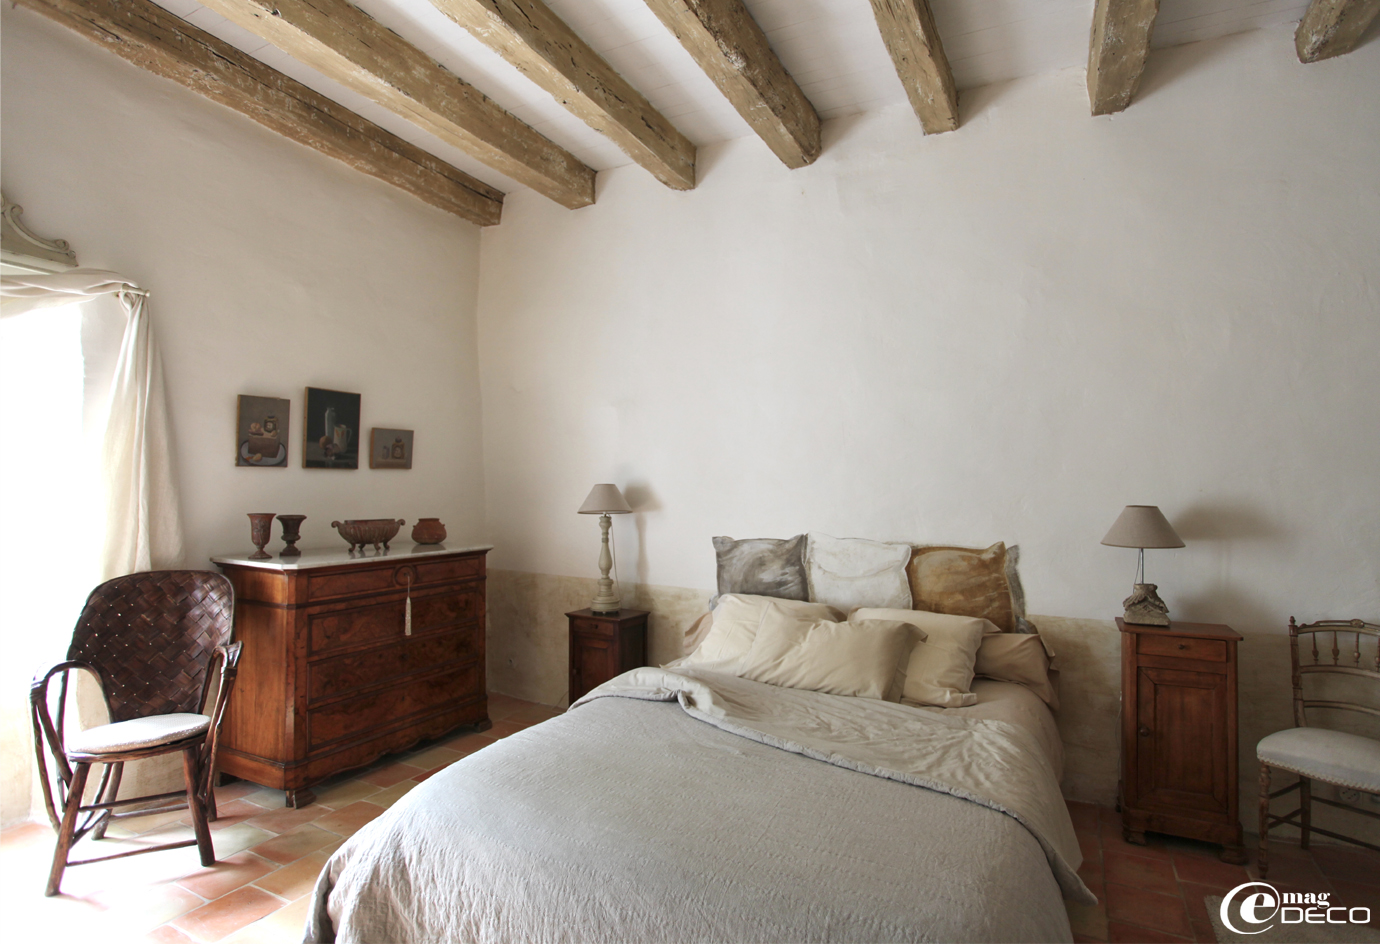 Badigeon à la chaux, poutres blanchies, dans une des chambres de la maison d'hôtes Le Relais de Roquefereau